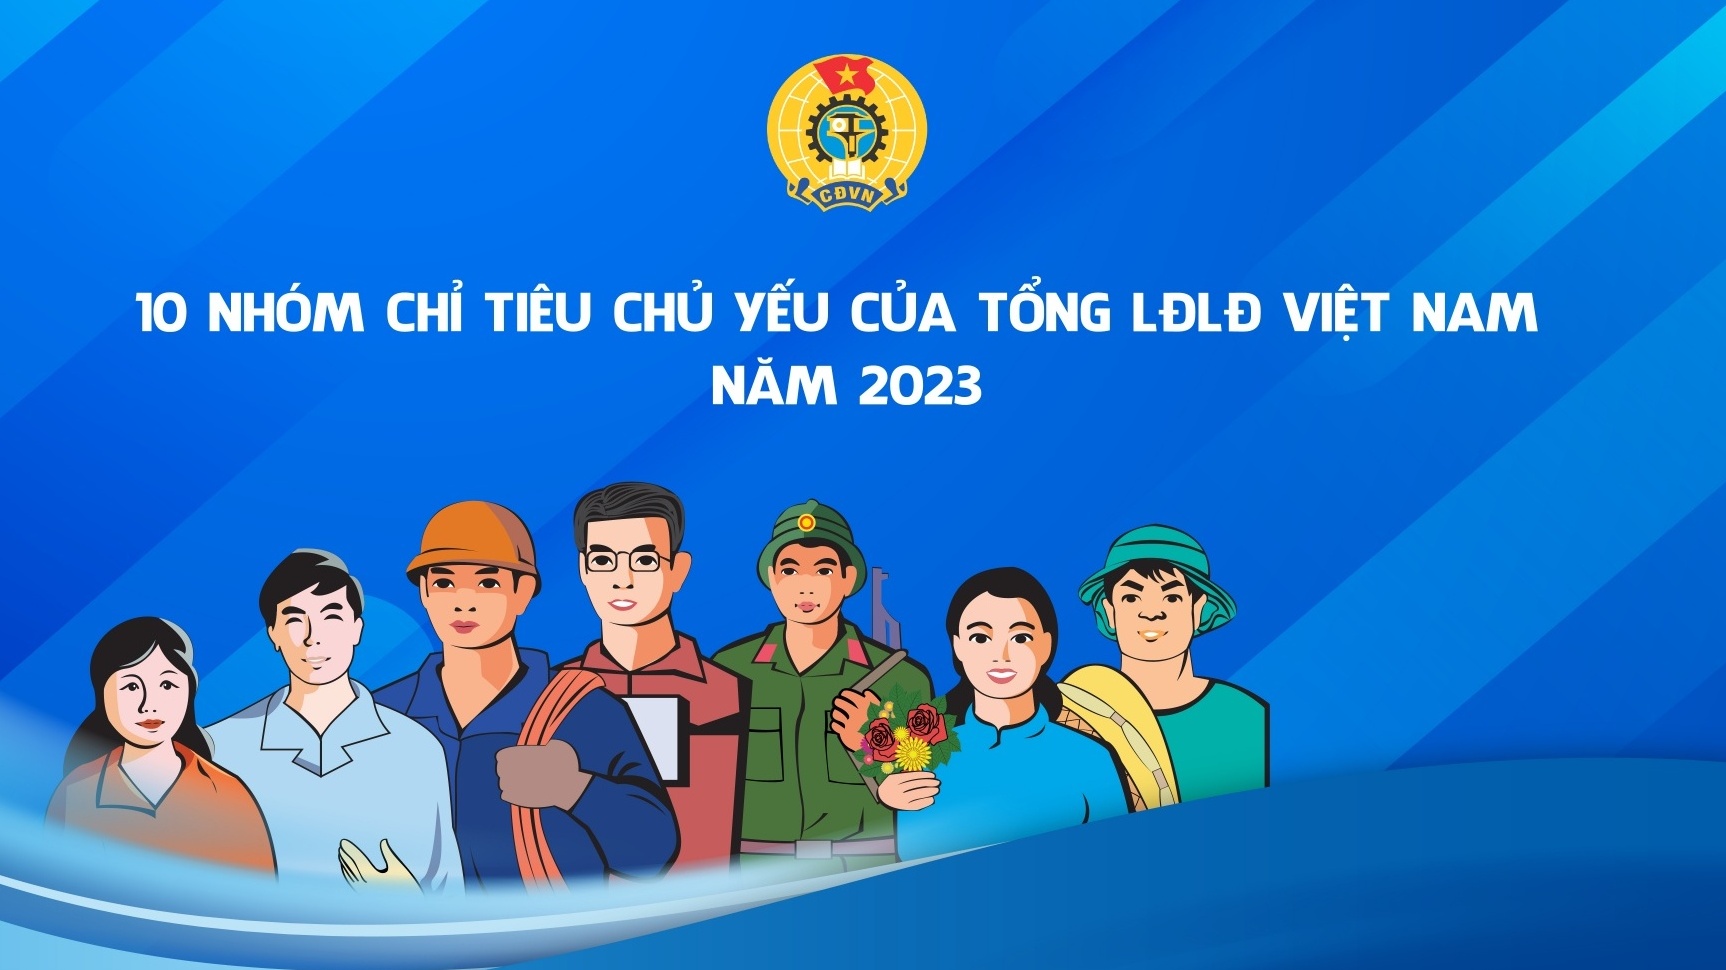 10 nhóm chỉ tiêu chủ yếu của Tổng LĐLĐ Việt Nam năm 2023